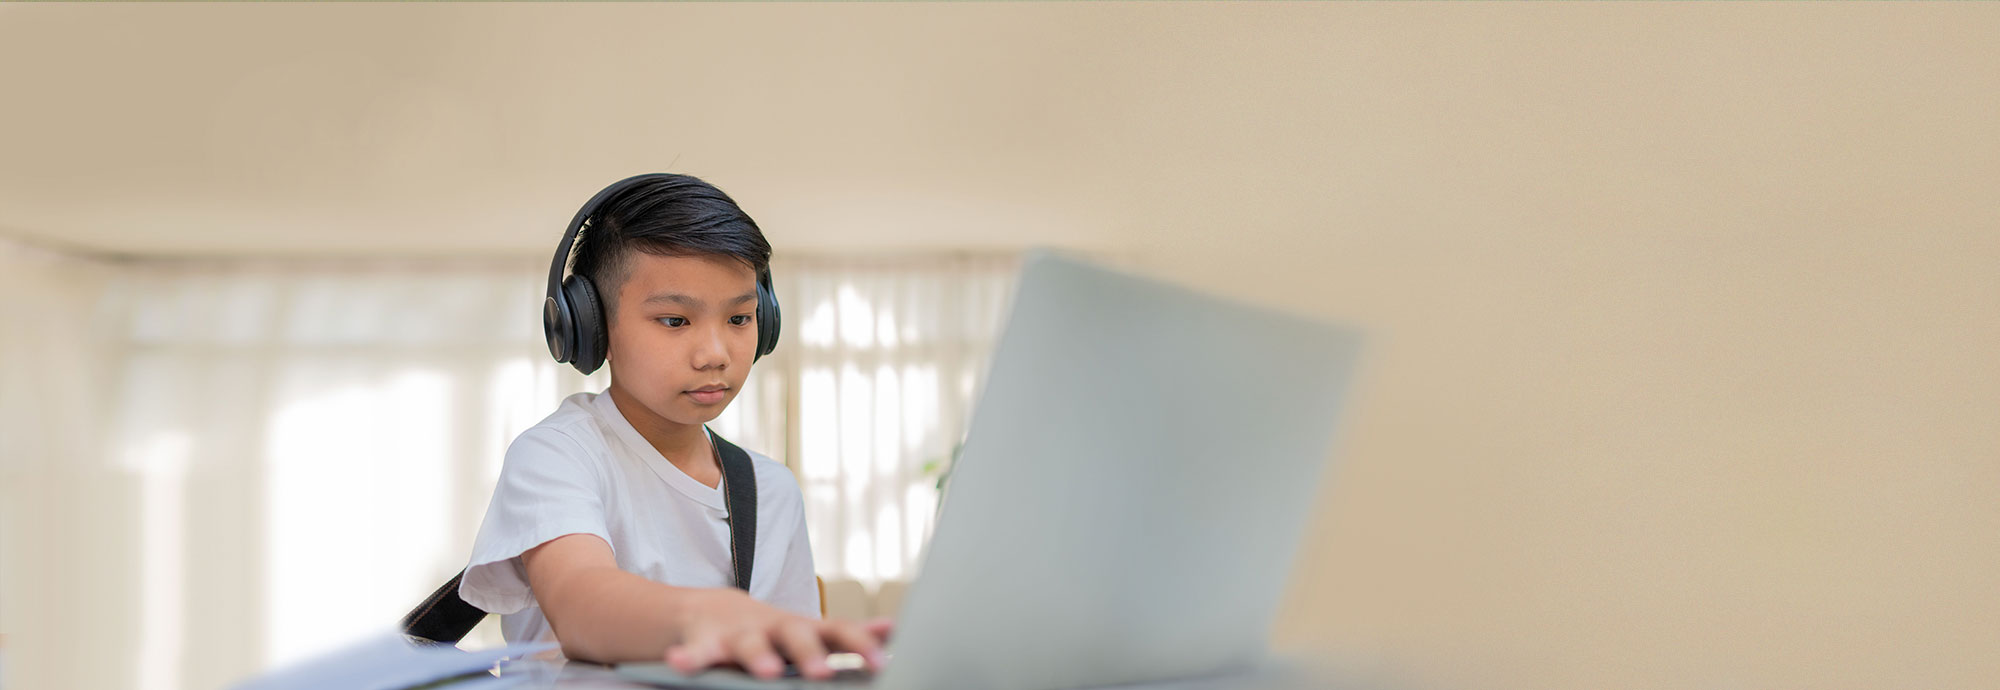 Une jeune personne consulte diverses activités en lien avec la santé mentale pour les jeunes sur un ordinateur portable